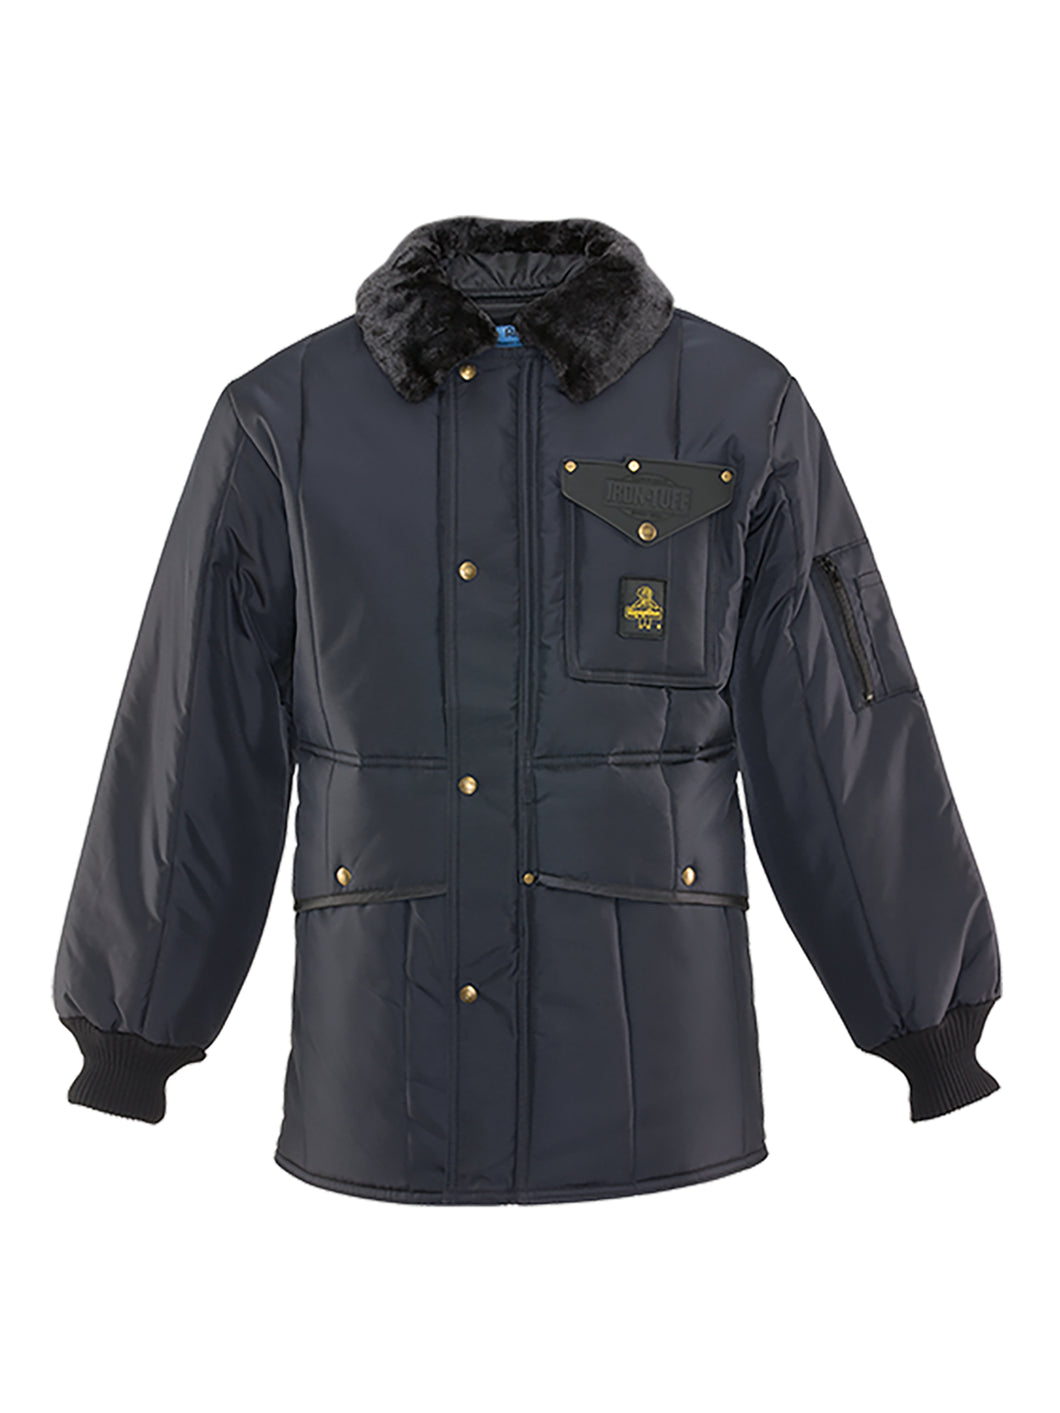 Refrigiwear 0342R Iron-Tuff Sub-Zero Jackoat Coat